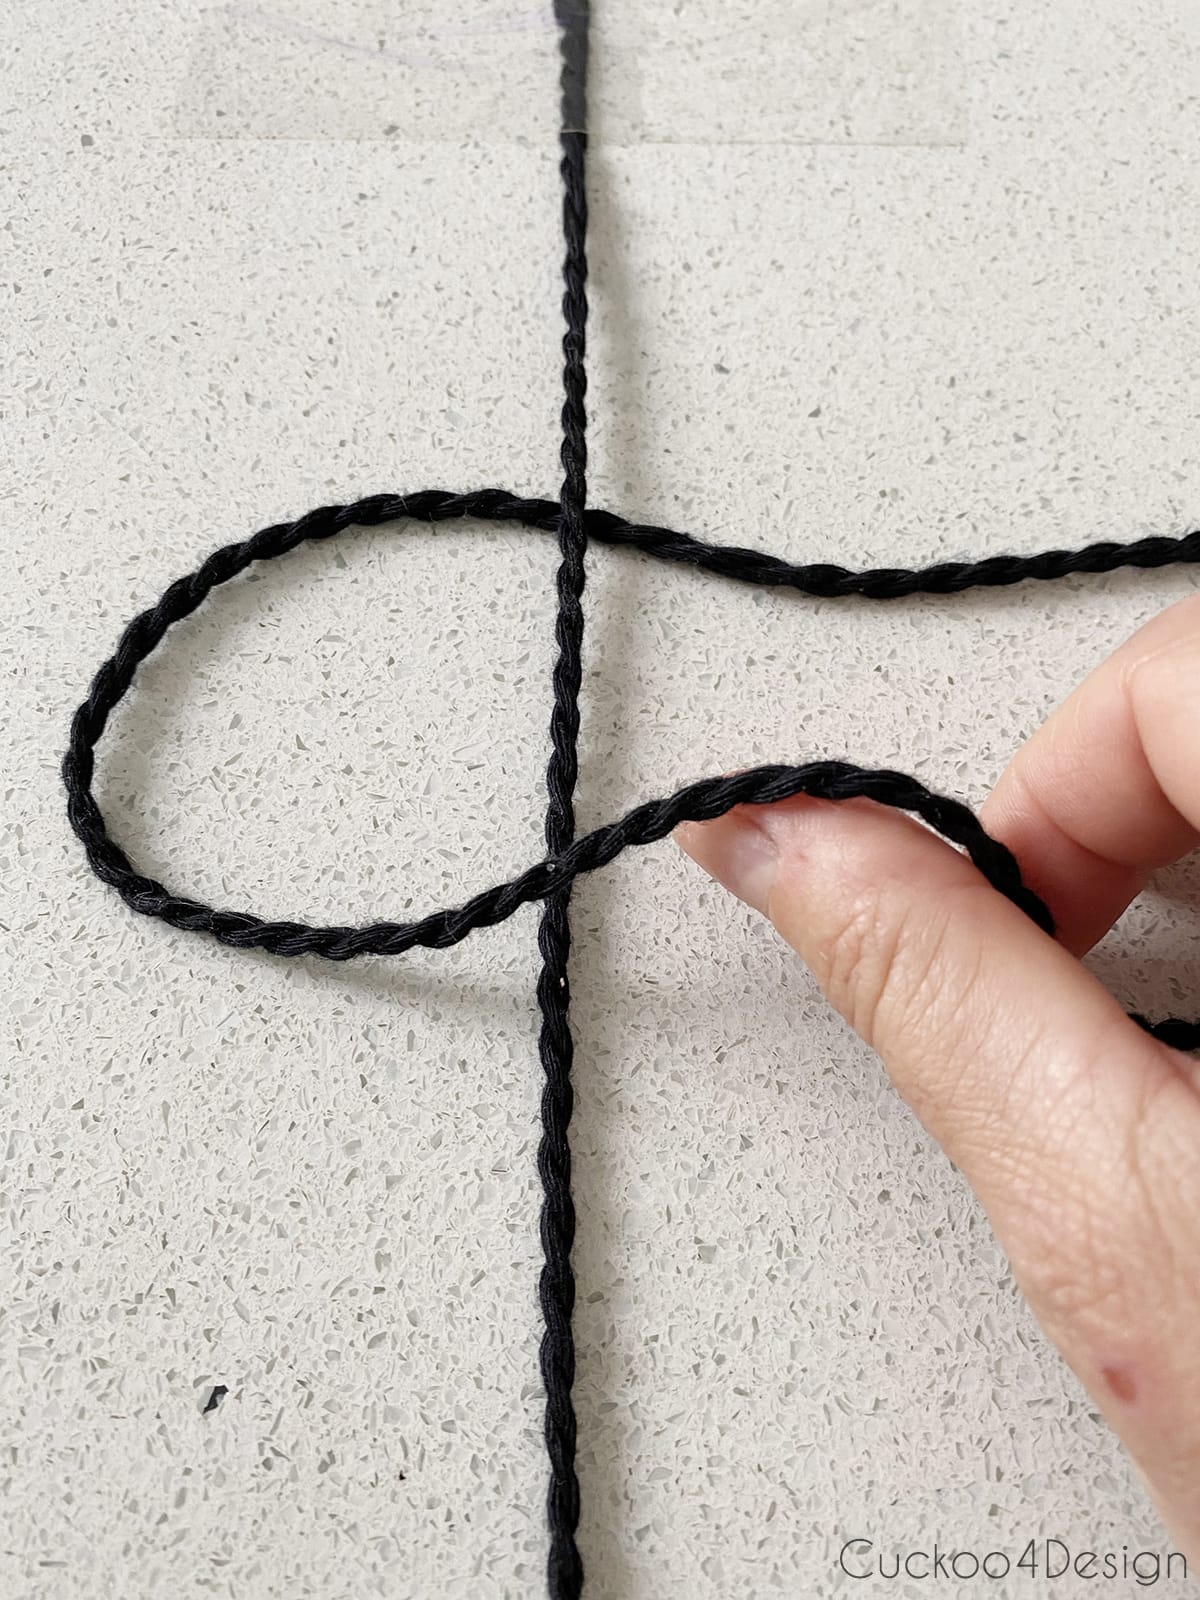 folding the left string over the center string